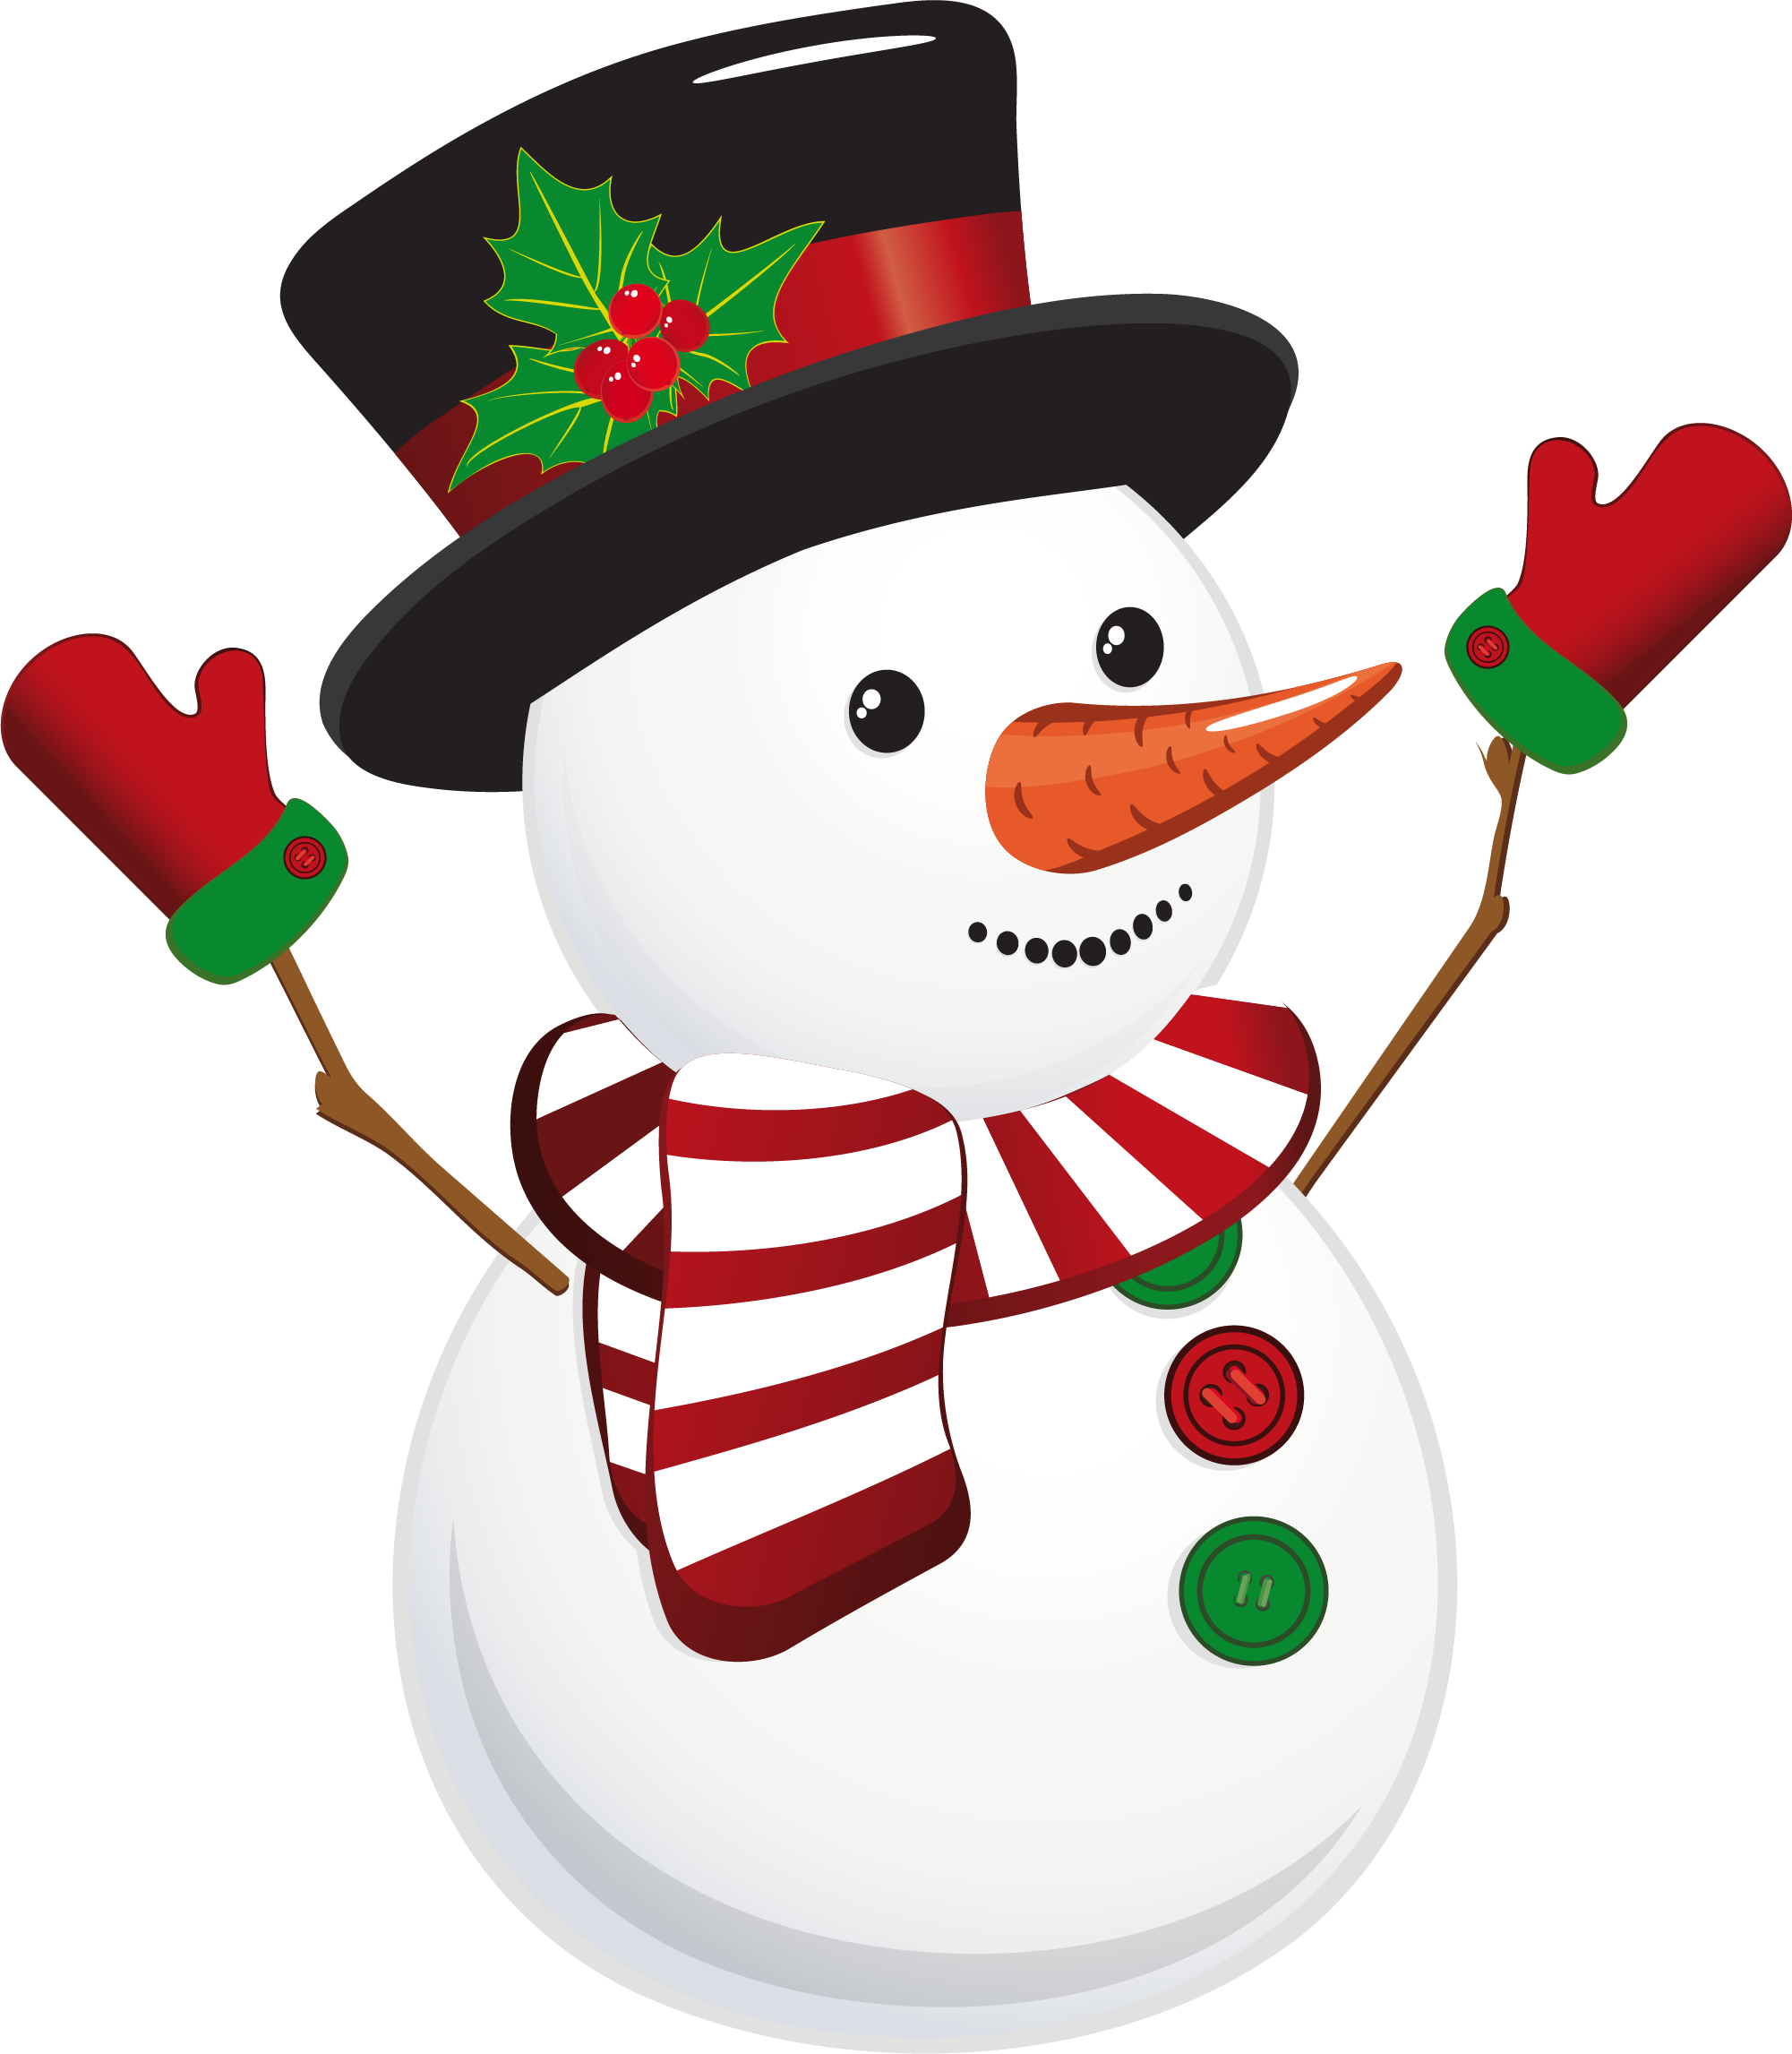 Download Snowman Claus Cartoon Santa White Christmas Card ...